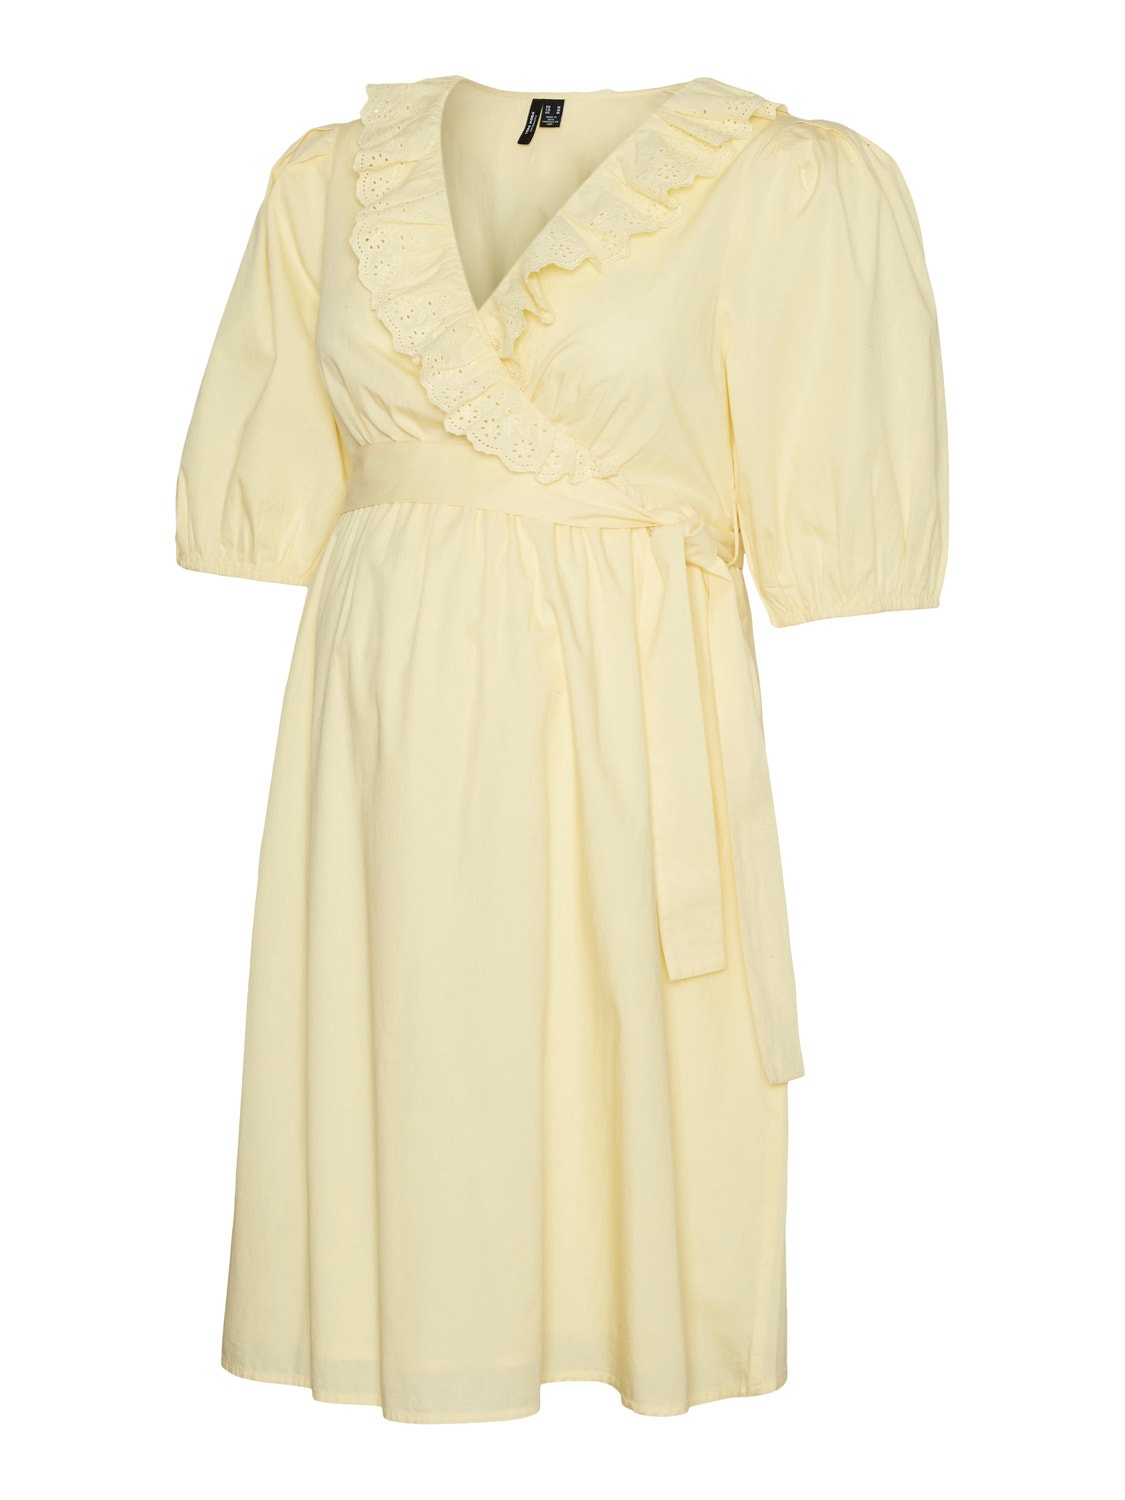 MAMA.LICIOUS Maternity-dress -Lemon Meringue - 20016405